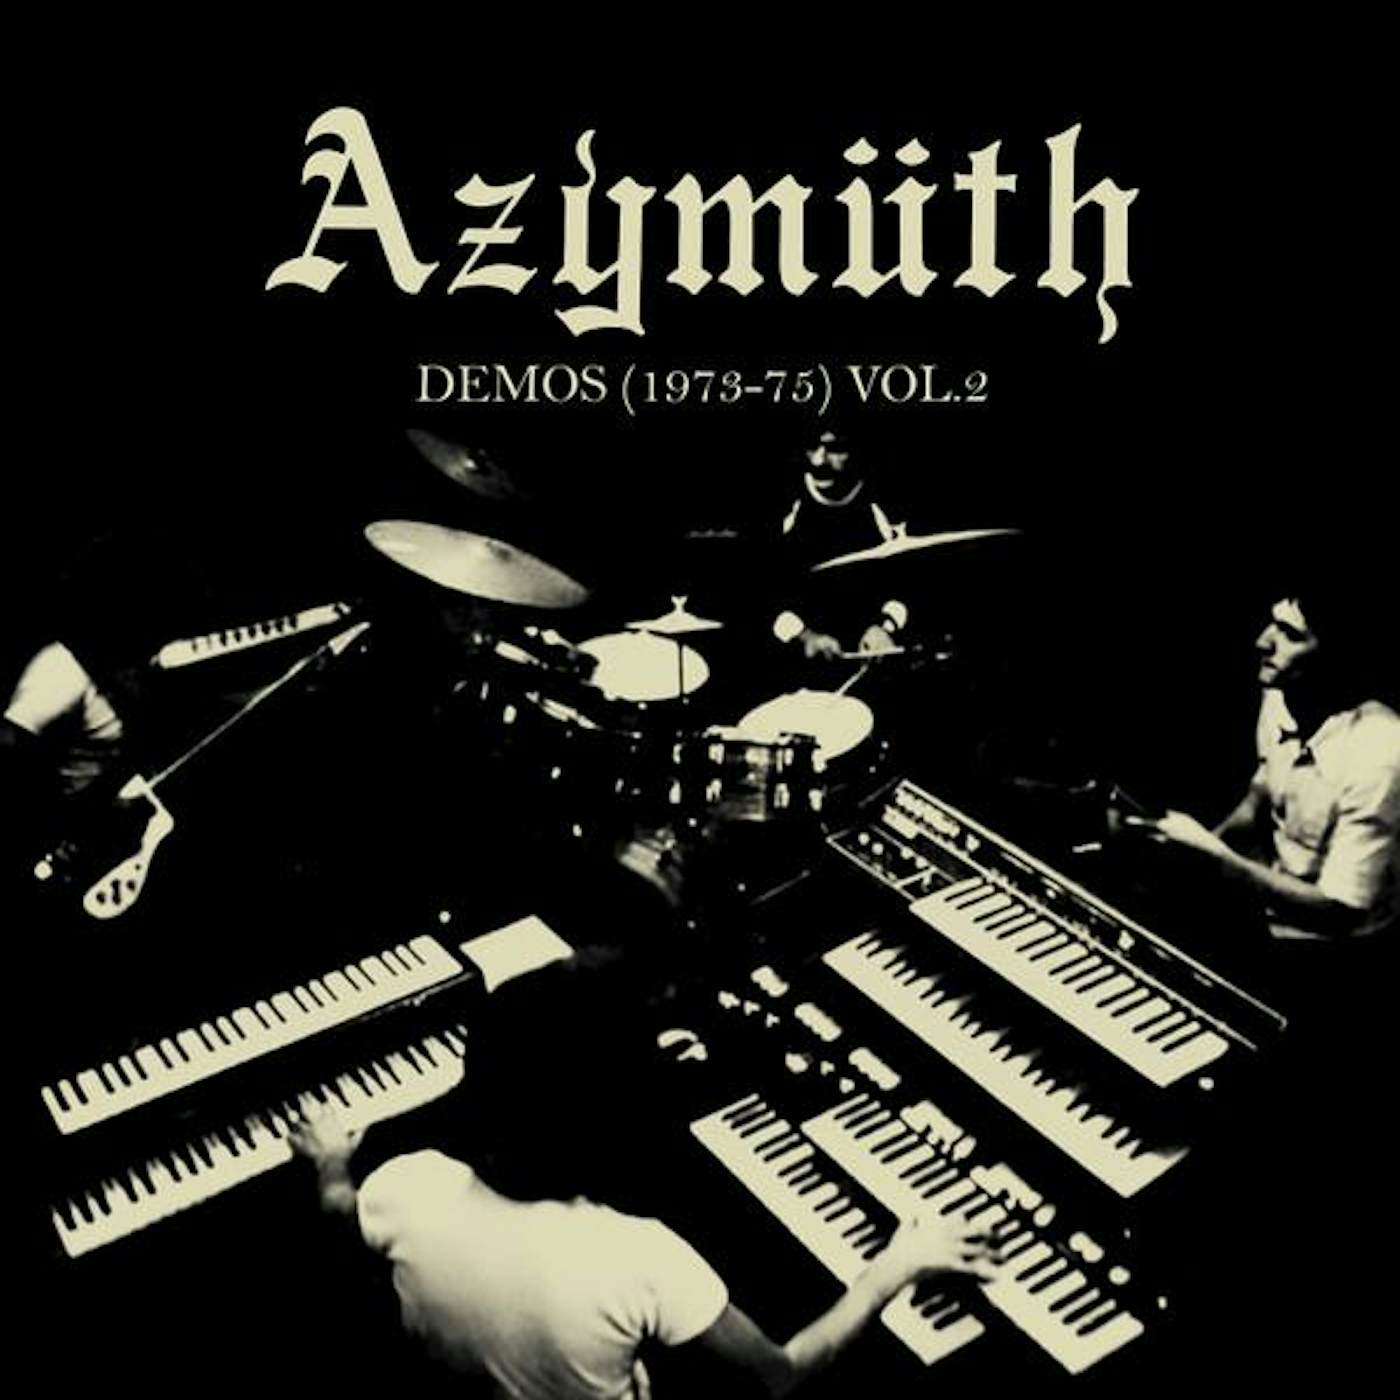 Azymuth DEMOS (1973-75) VOL. 2 (180G/DL CODE) Vinyl Record